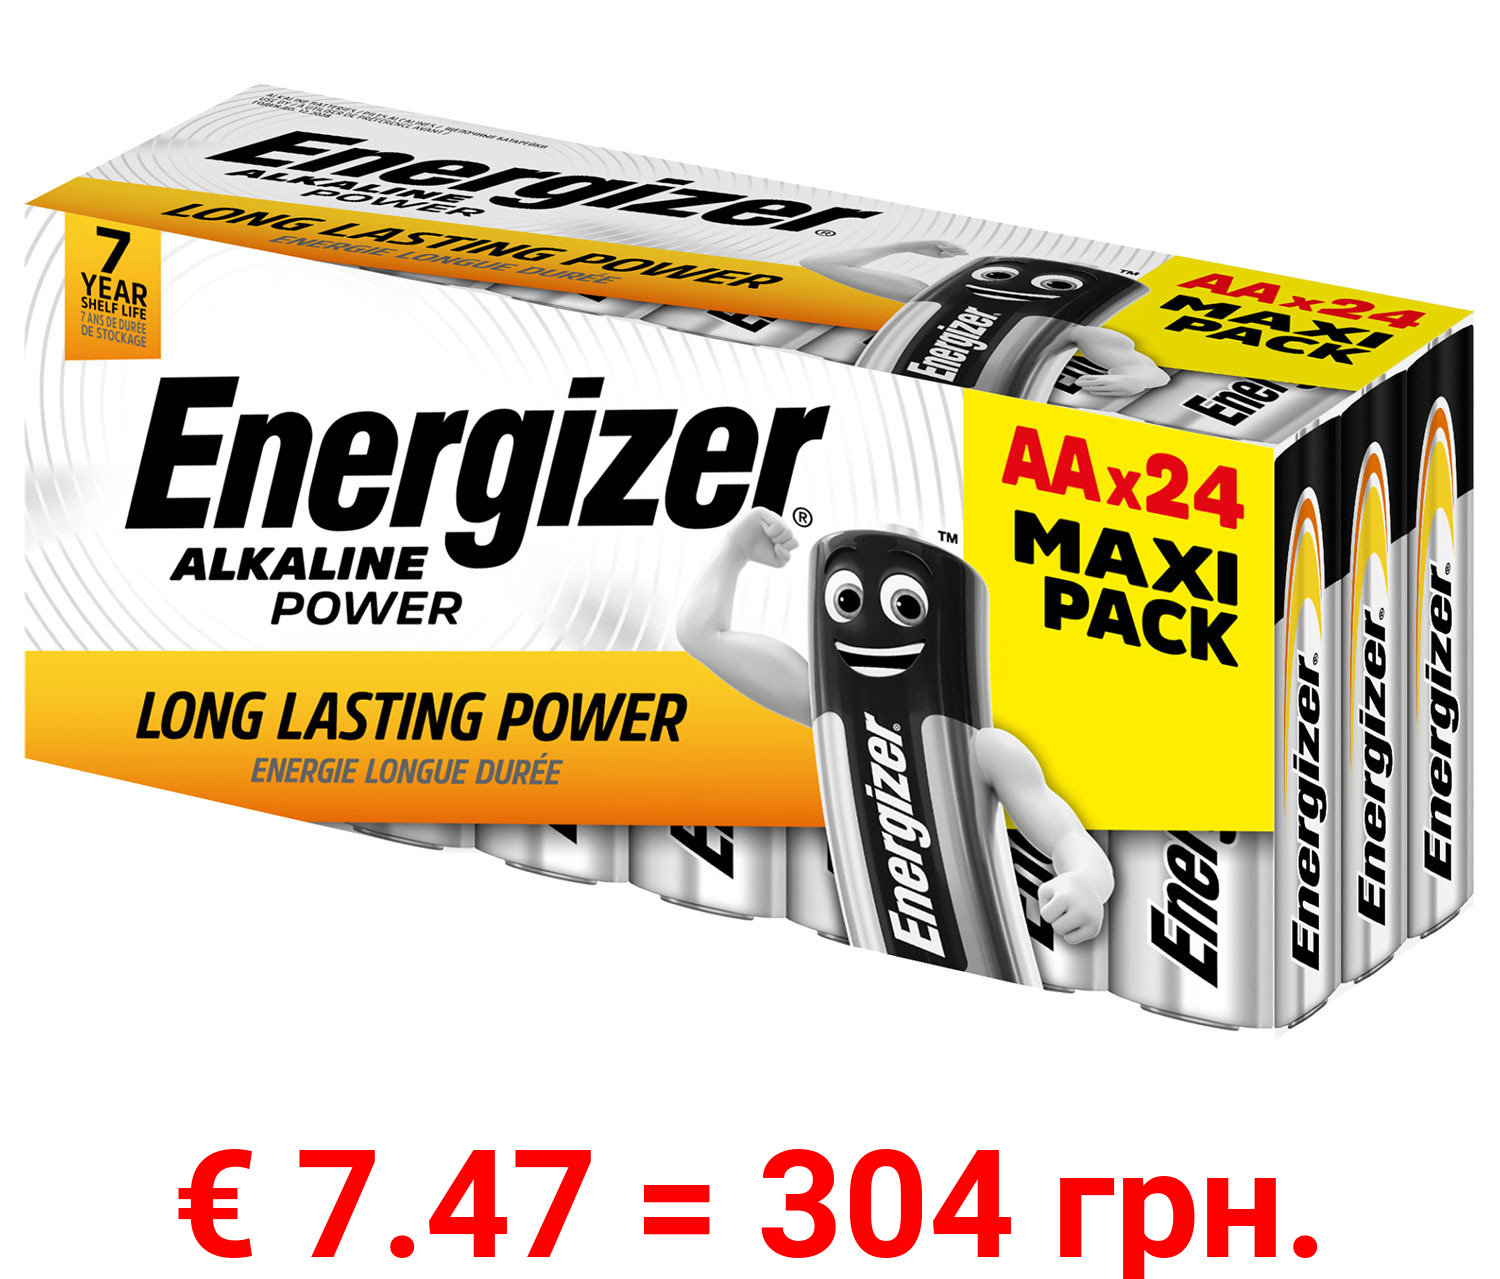 Energizer Alkaline Power Mignon (AA) 24 Stück plastkfrei